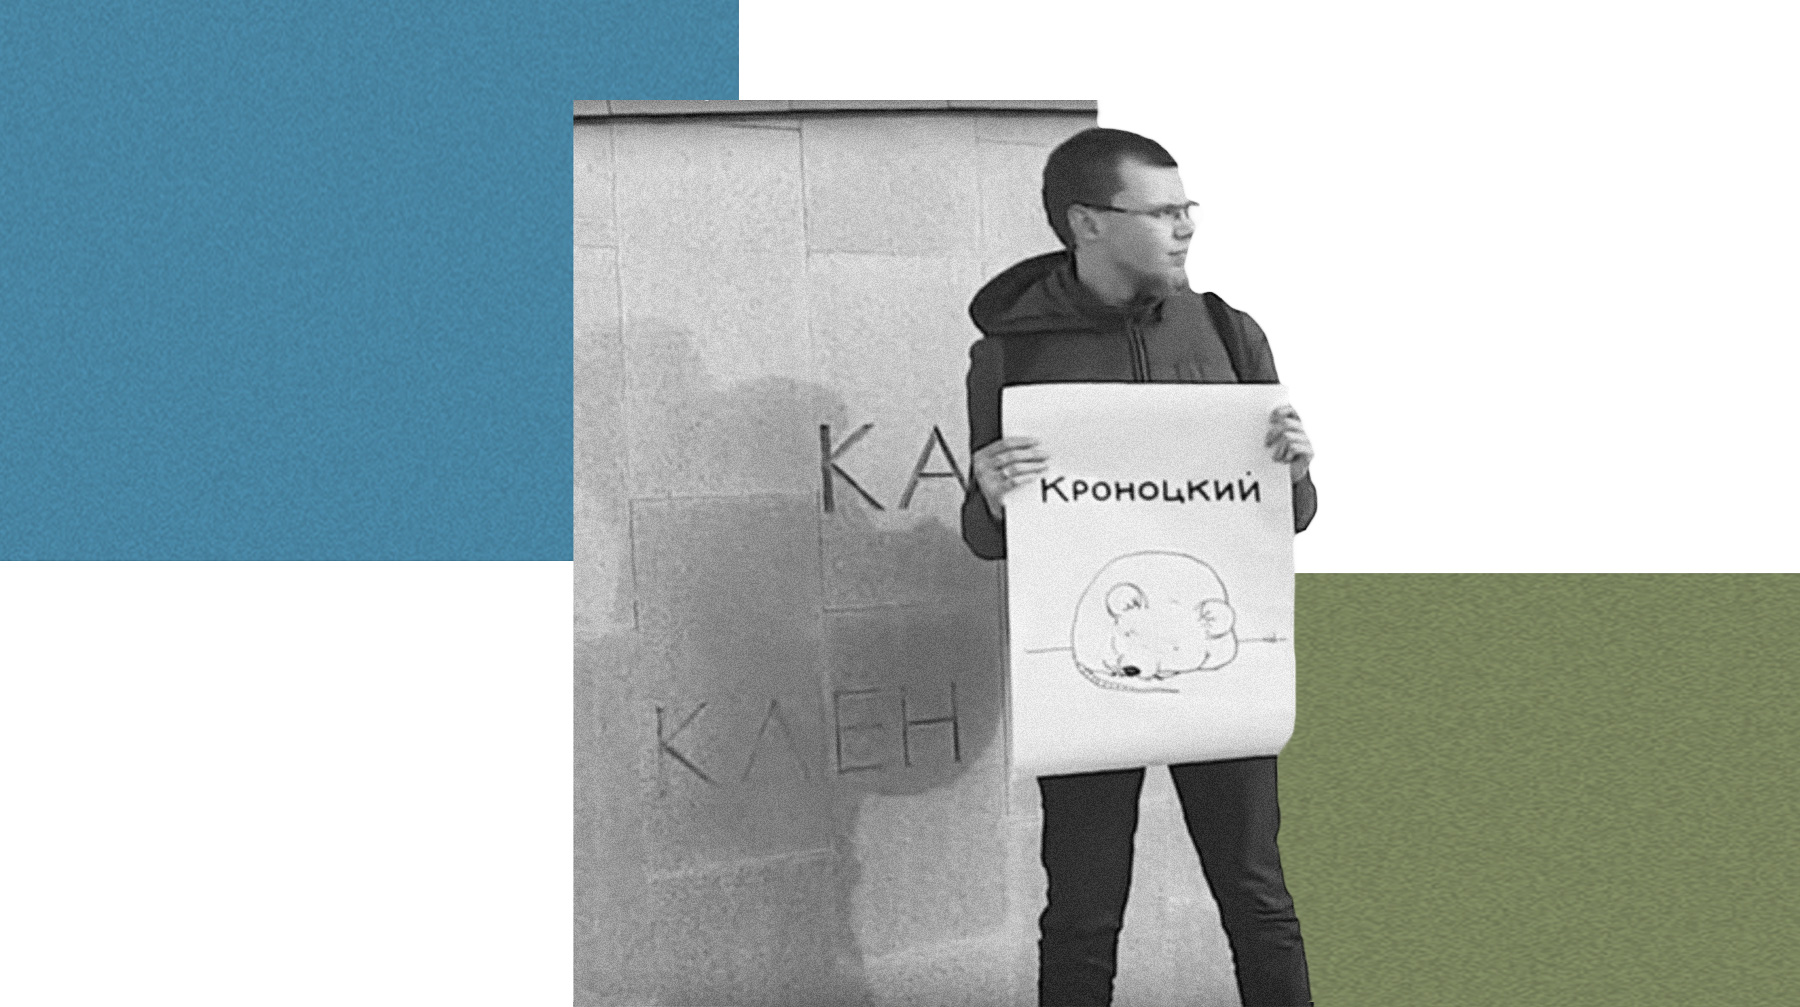 В разных точках столицы люди стояли с бессмысленными на первый взгляд плакатами: «И», «Кроноцкий», «Тимченко», «Заповедник» Коллаж: © Daily Storm